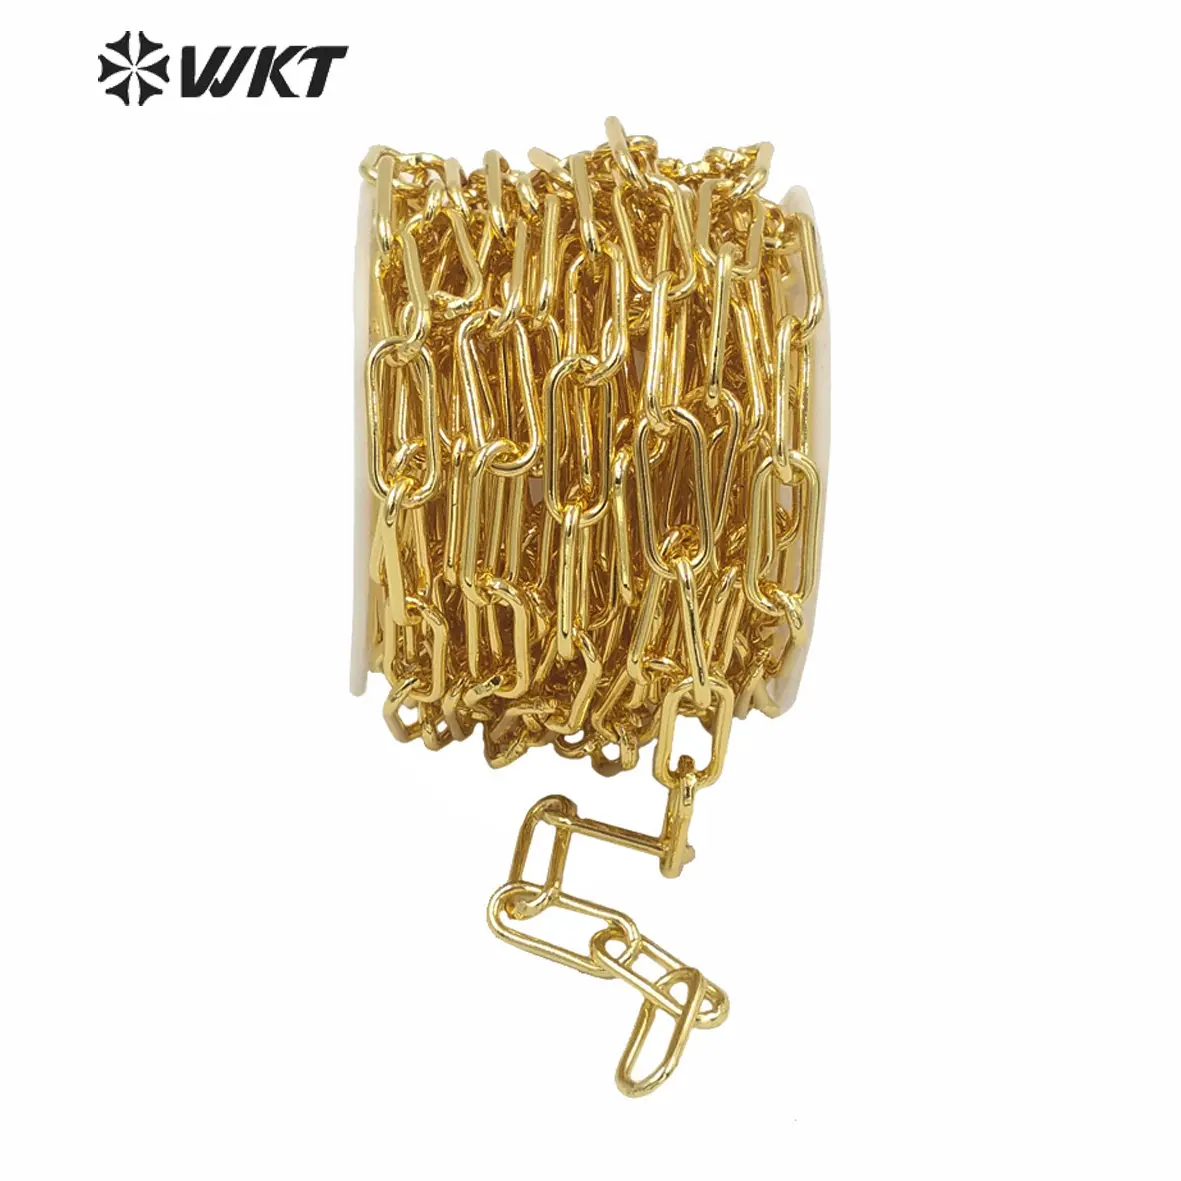 WT-BC149 WKT 뜨거운 판매 이상 연결된 chunky 체인 골드 도금 황동 체인 목걸이 인기 펑크 체인